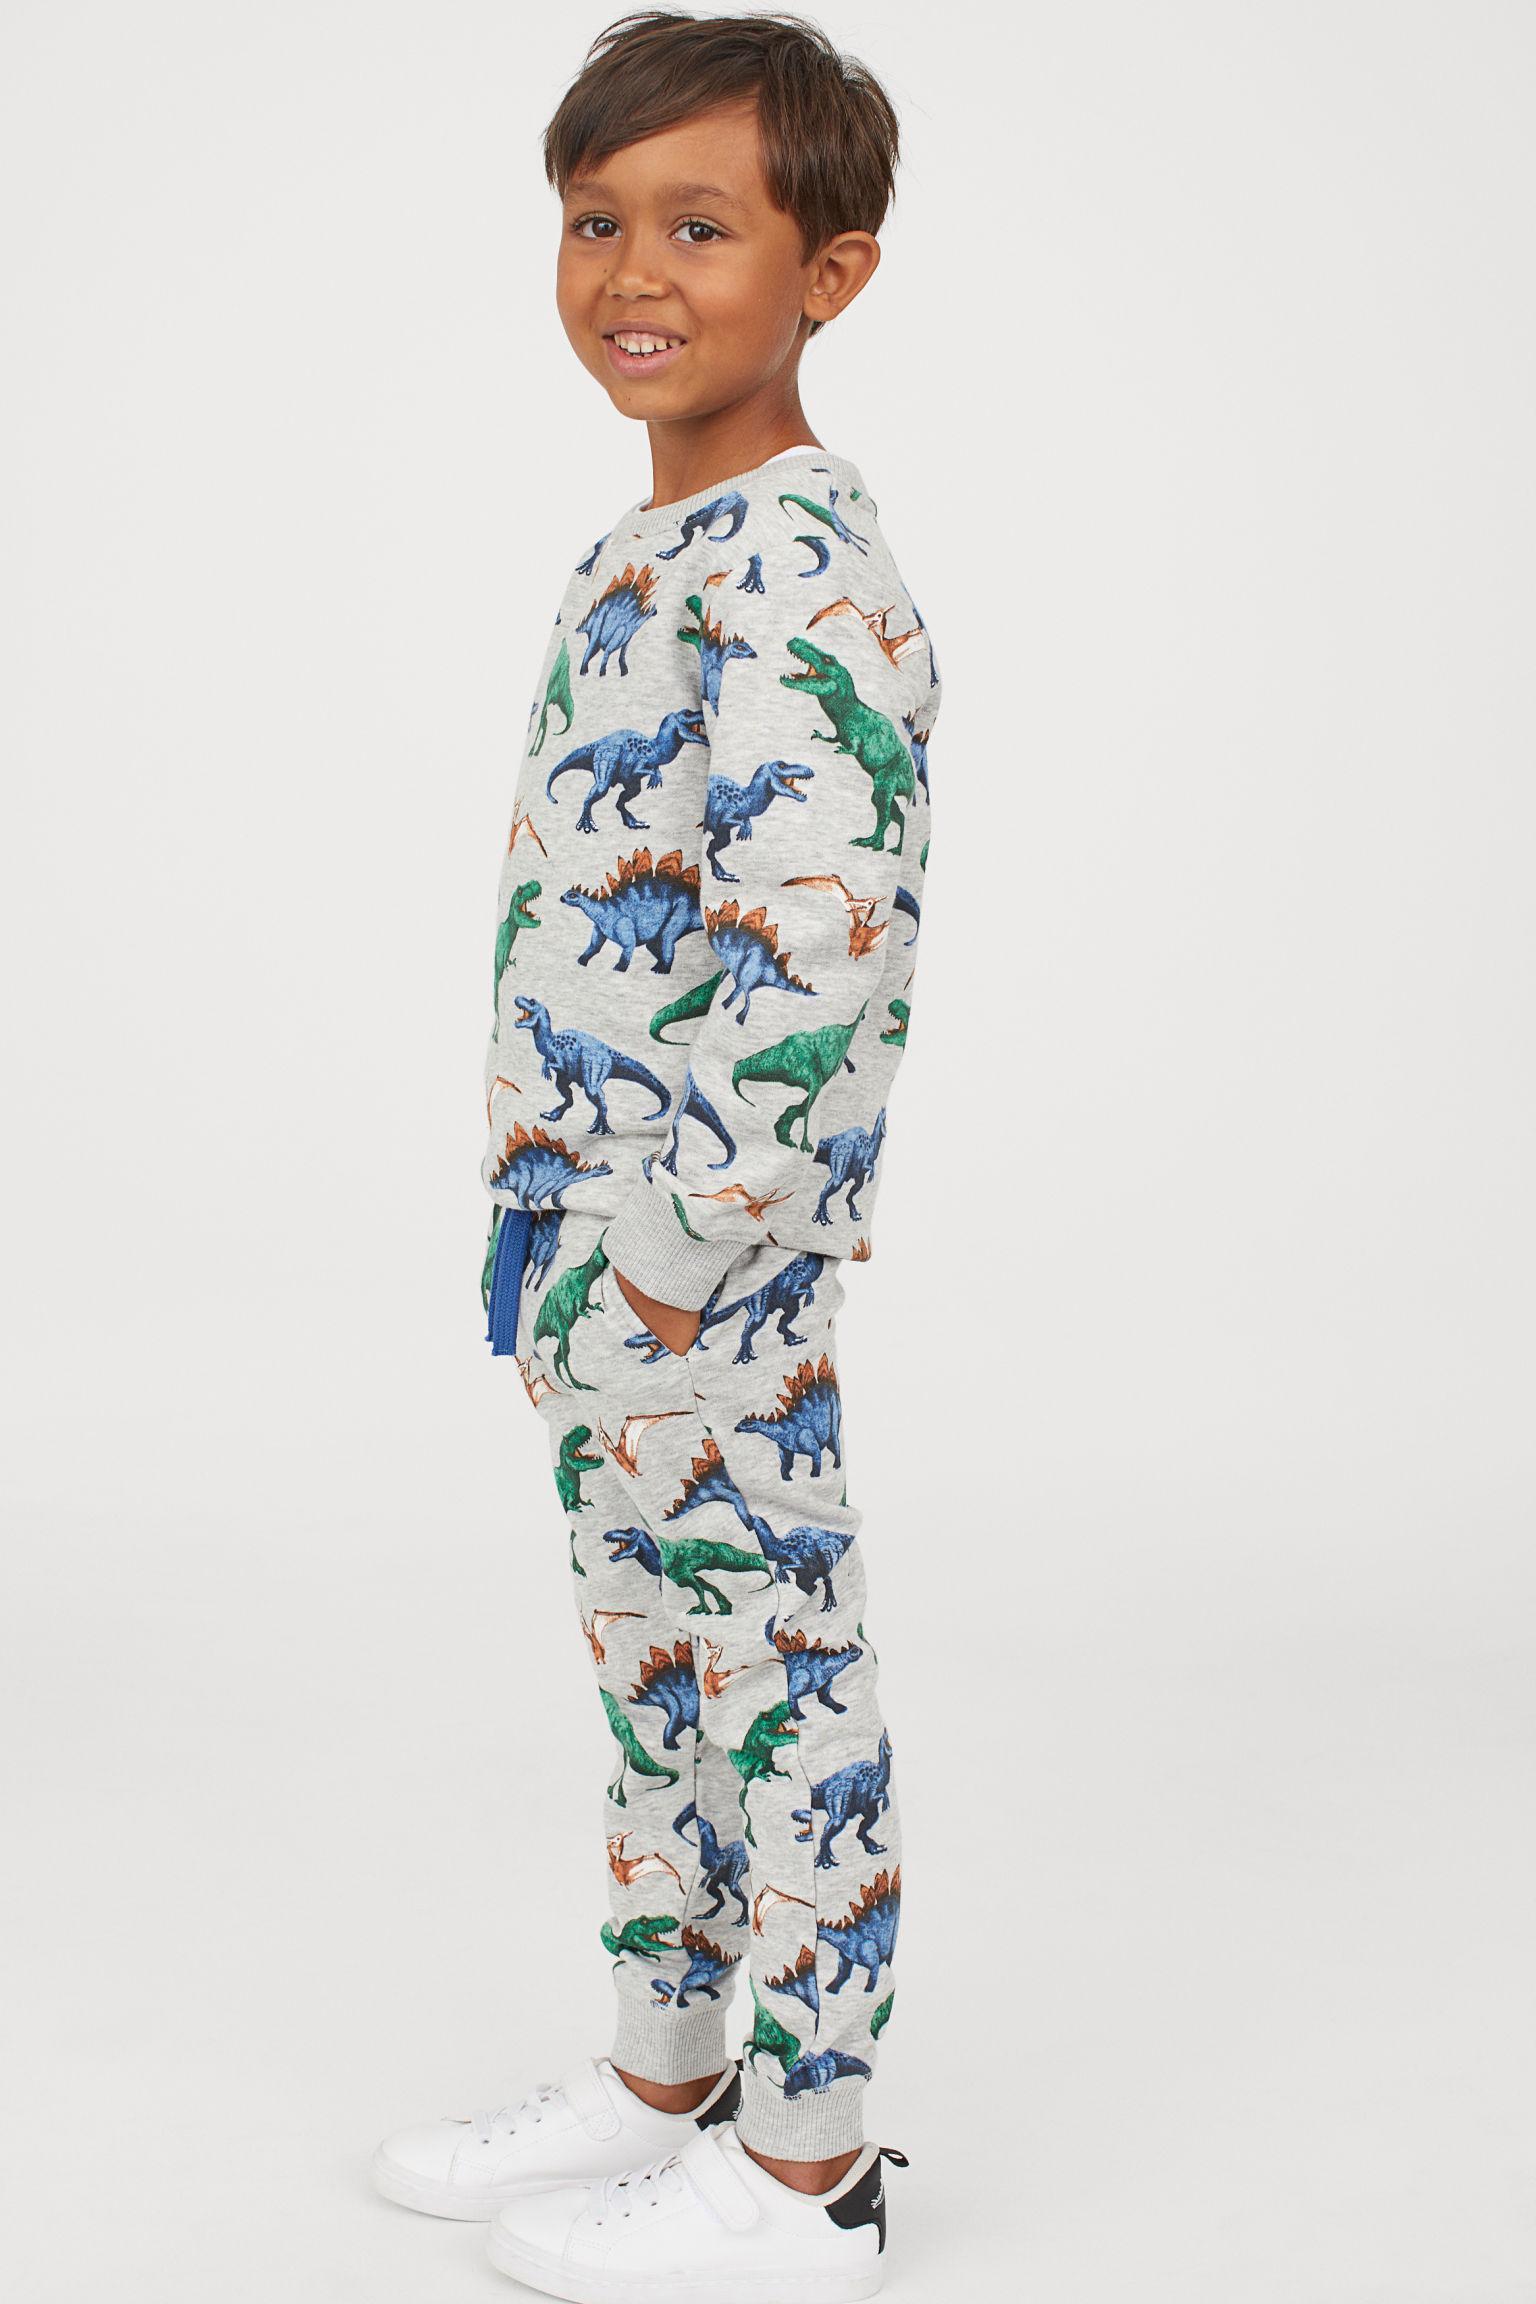 Отзыв на Цветные Спортивные штаны из Интернет-Магазина H&M